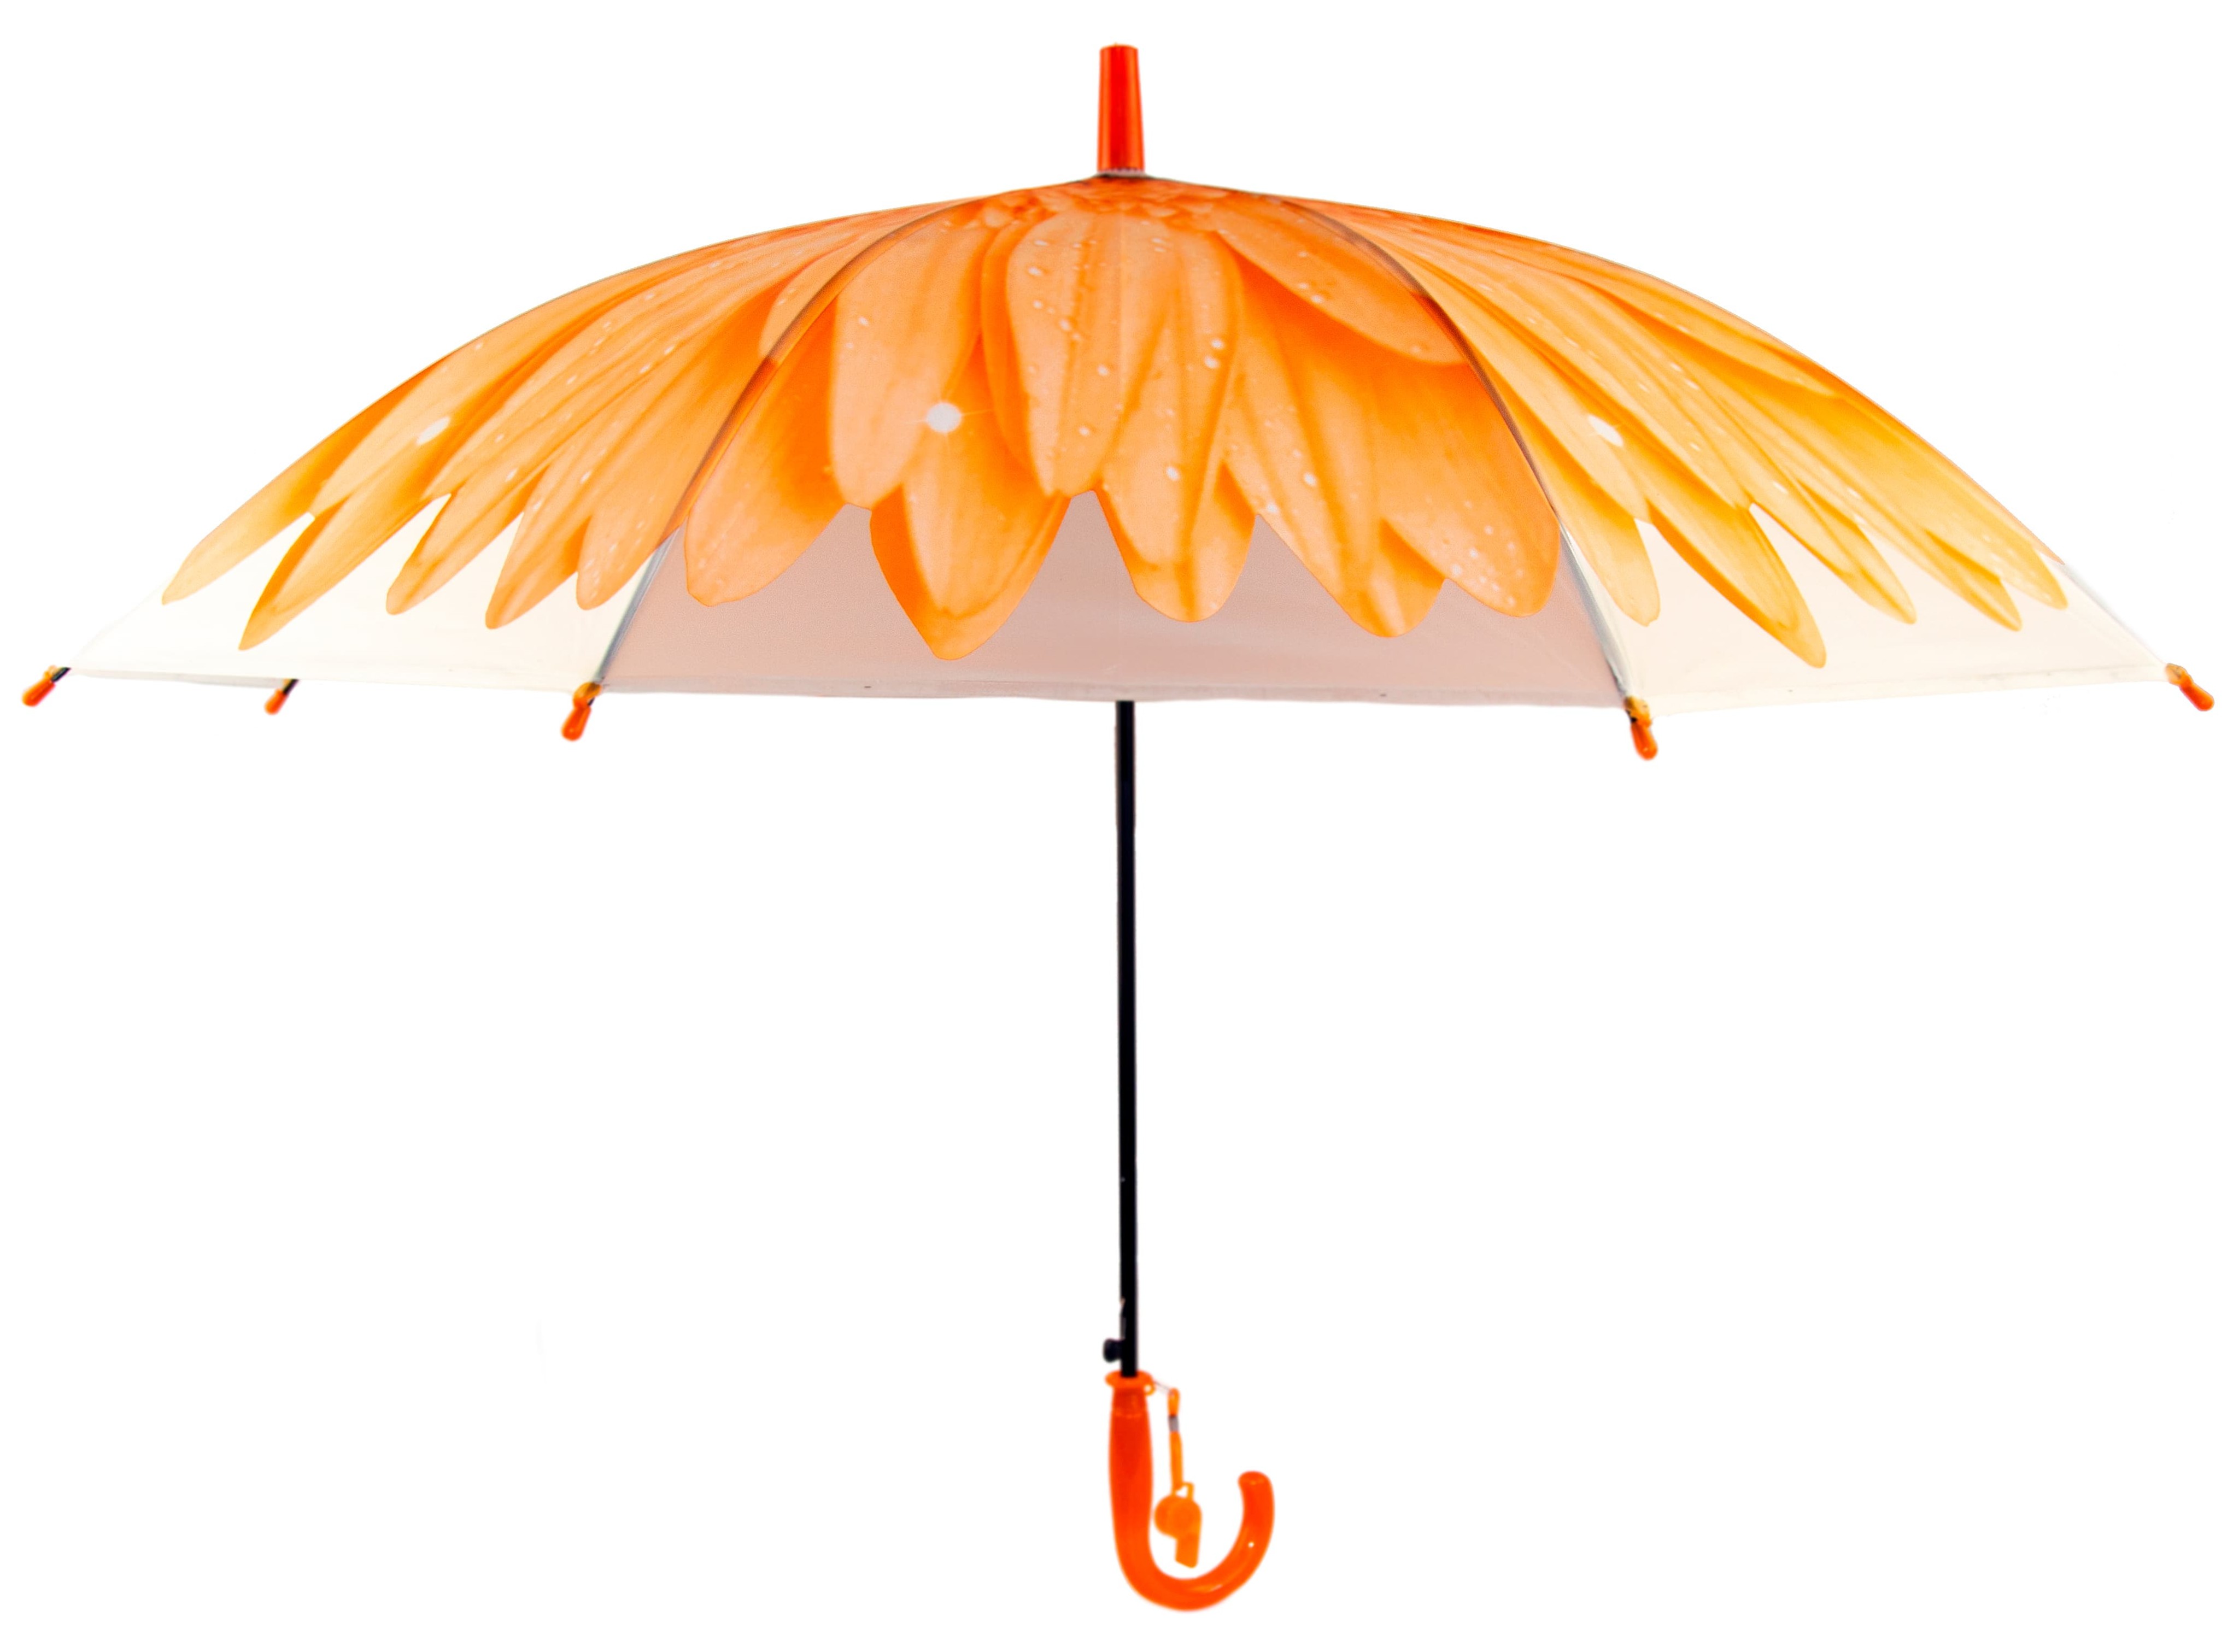 Зонтик детский «Гербера» матовый, со свистком, 50 см. Н45604 / Голубой